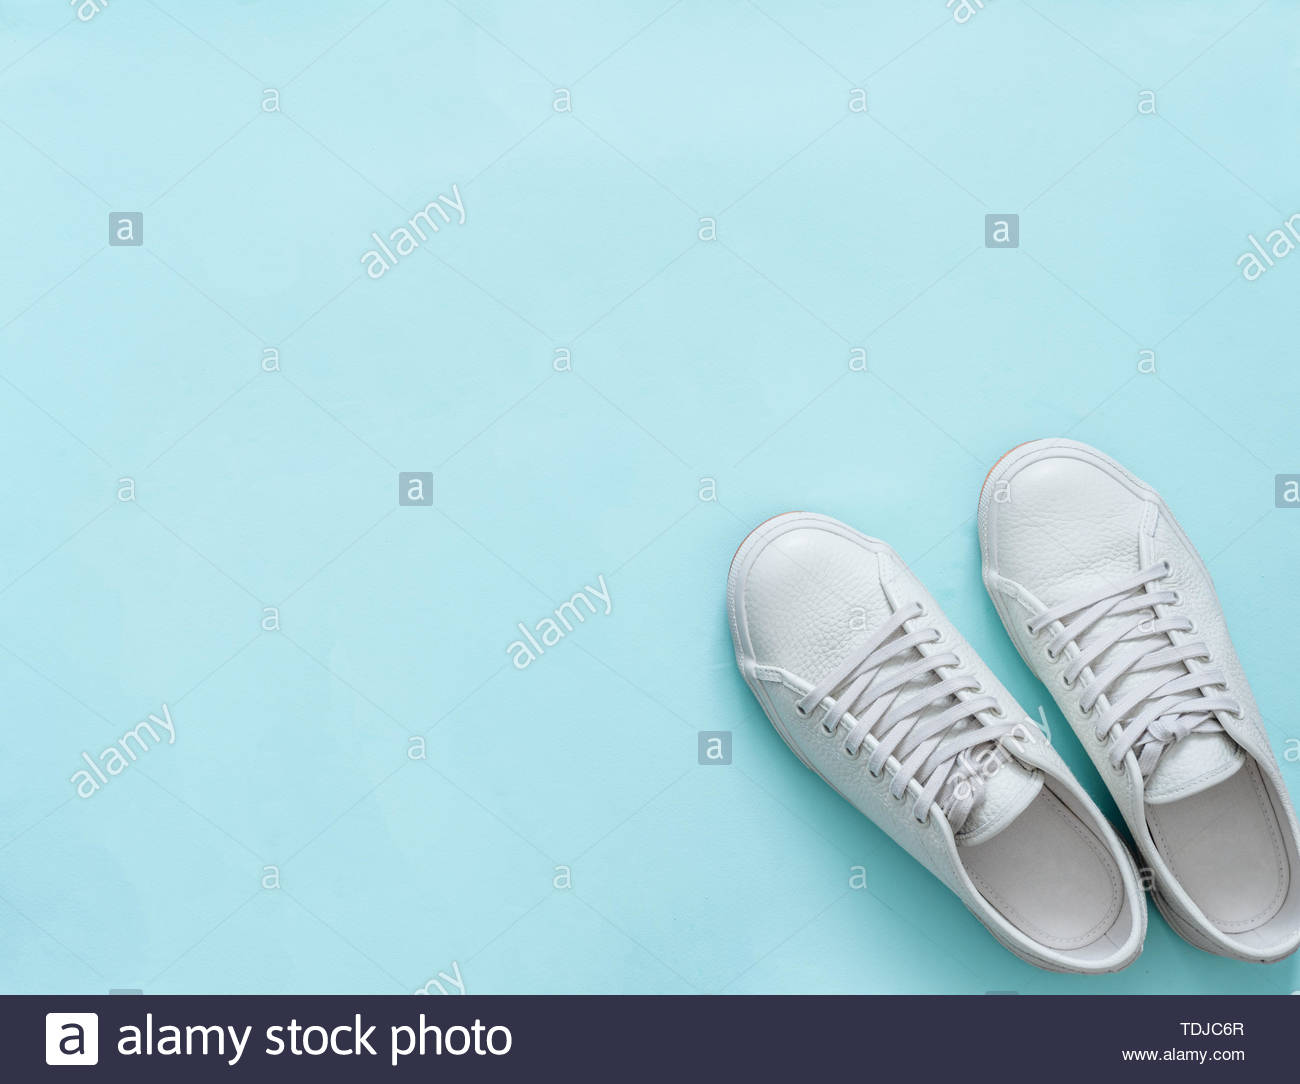 [51+] Sneakers Backgrounds | WallpaperSafari